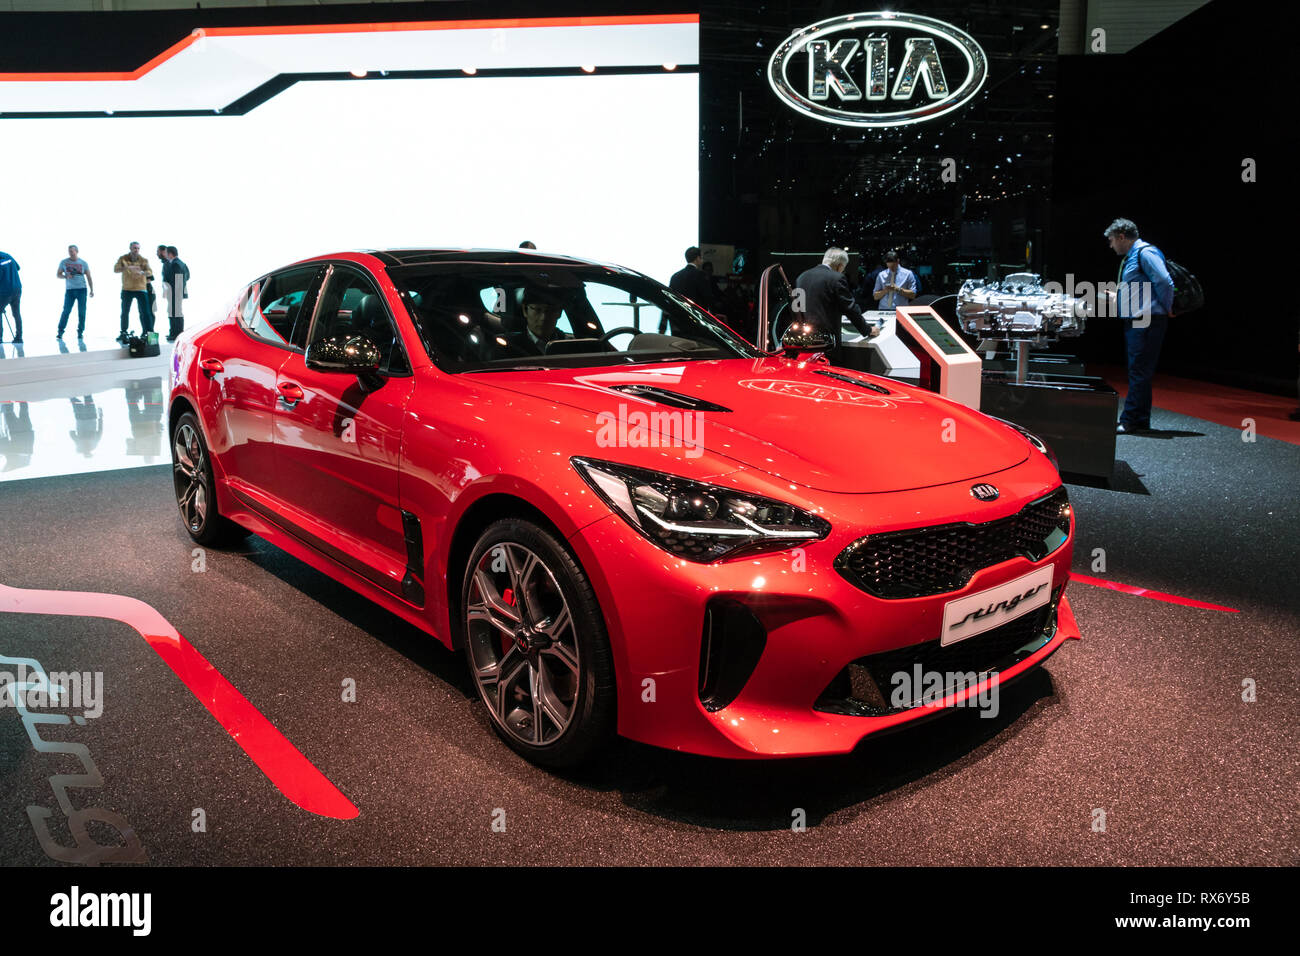 Genf, Schweiz - 6. MÄRZ 2018: Kia Stinger Auto auf dem 88. Internationalen Automobilsalon in Genf präsentiert. Stockfoto